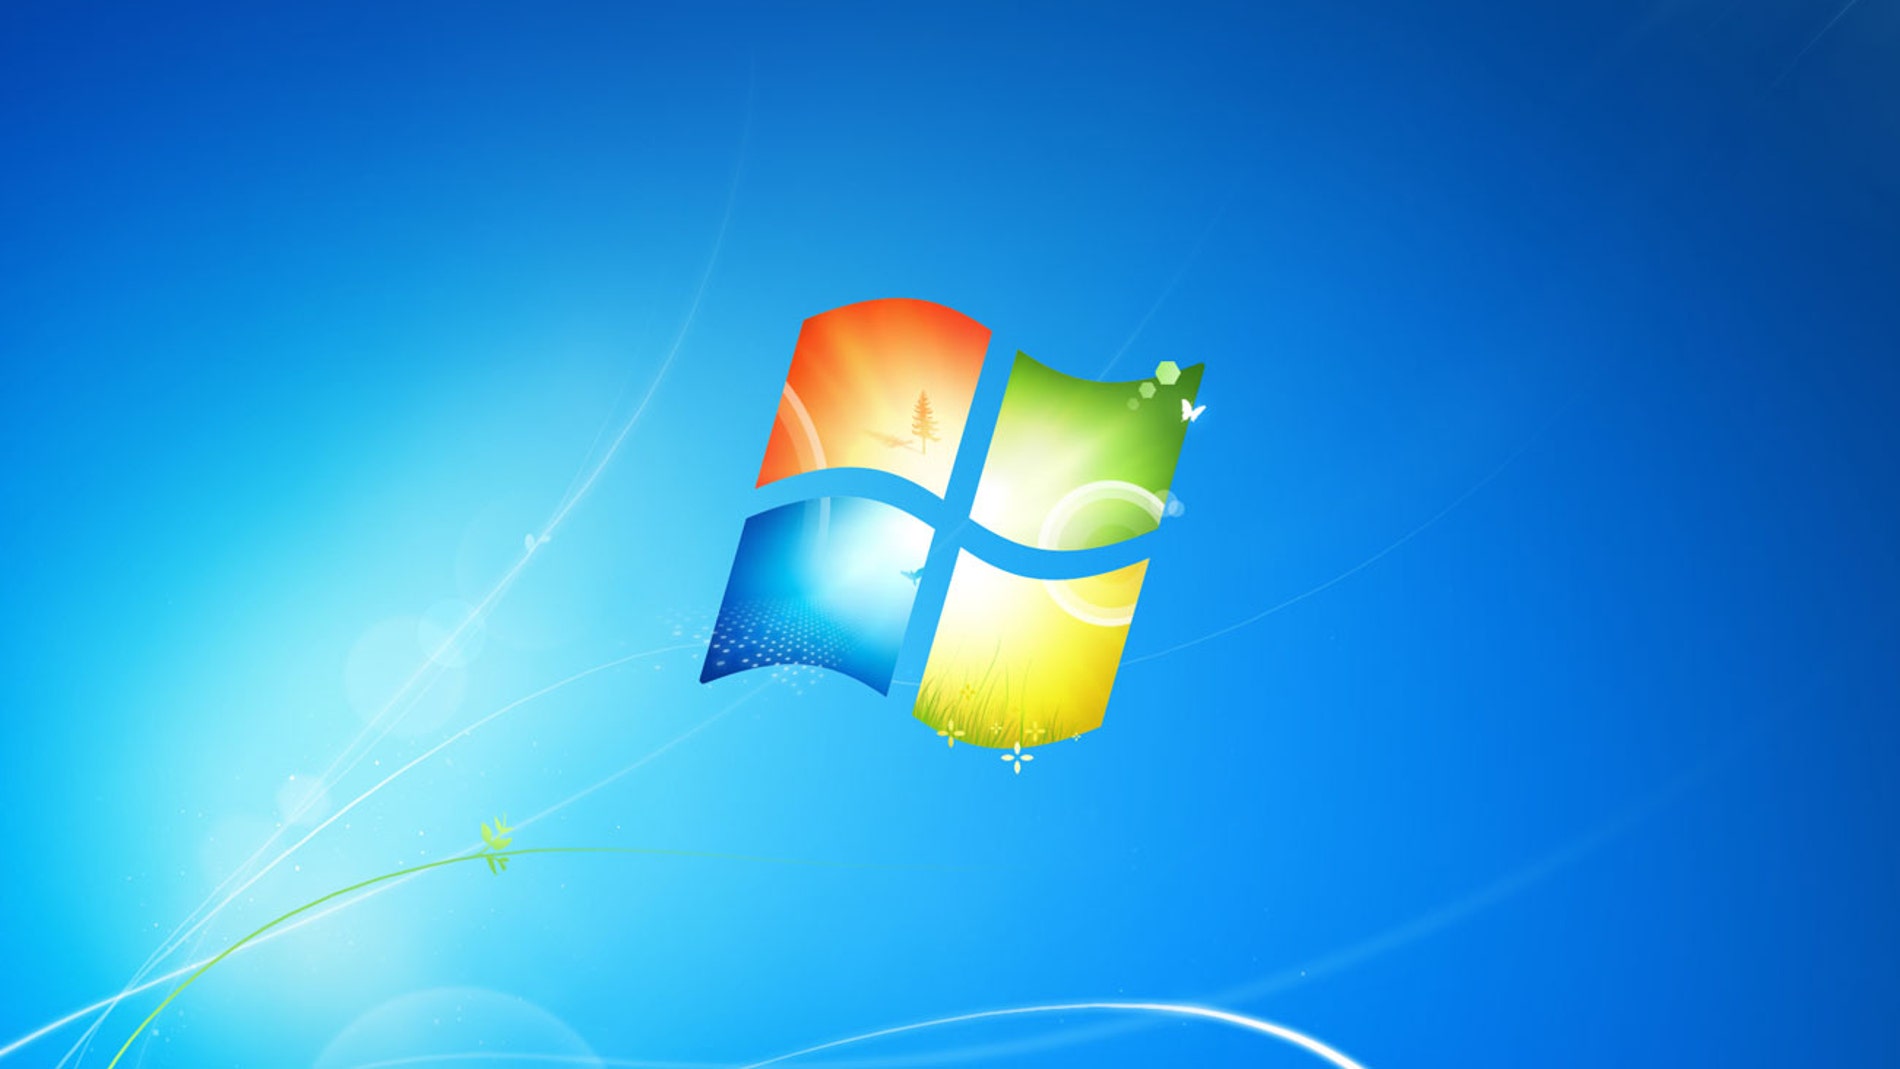 Tienes un ordenador con Windows 7 original? Todavía puedes actualizar a Windows  10 gratis